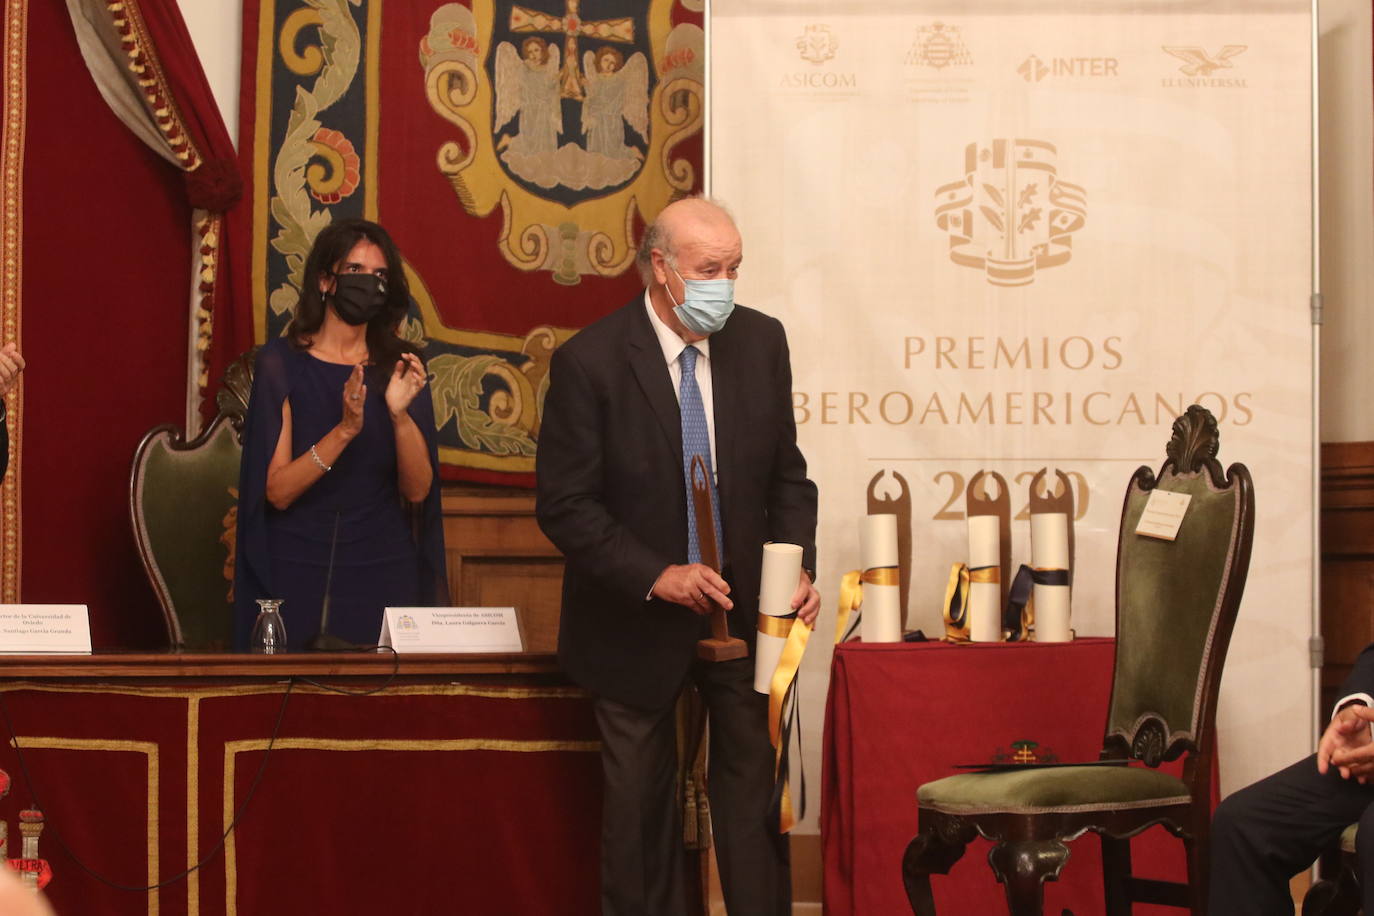 Este martes tuvo lugar la entrega de Prtemios de la Asociación Iberoamericana de la Comunicación en el Paraninfo de la Universidad de Oviedo. Entre los galardonados estuvieron el exseleccionador de fútbol Vicente del Bosque y el director del diario Marca, Juan Ignacio Gallardo.